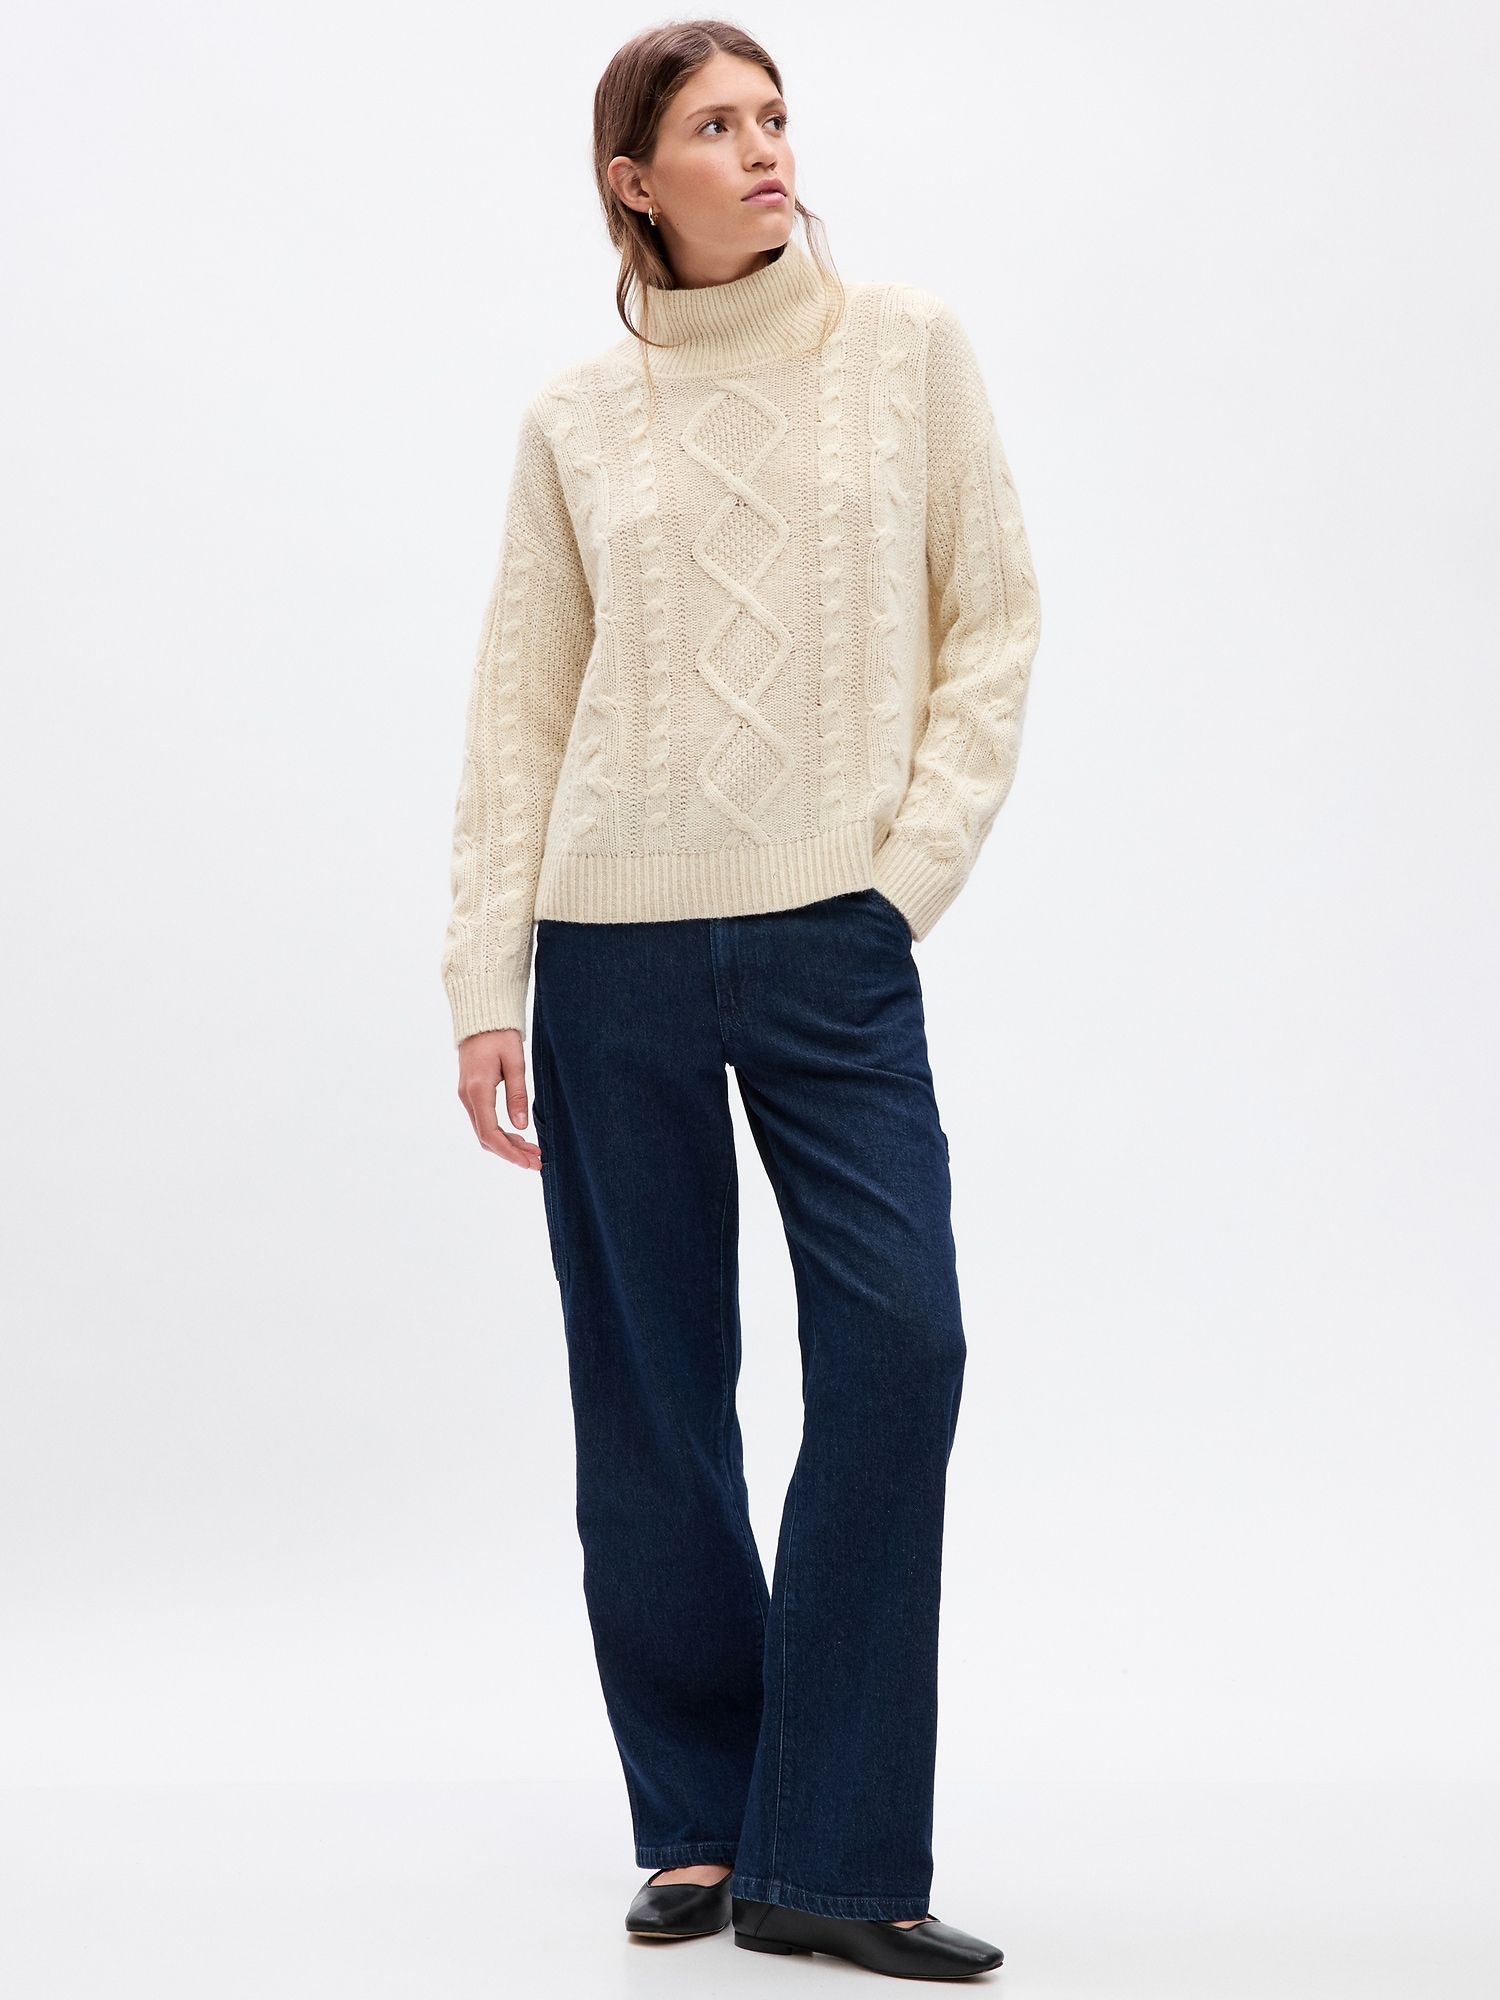 GAP Wool Sweater - Women